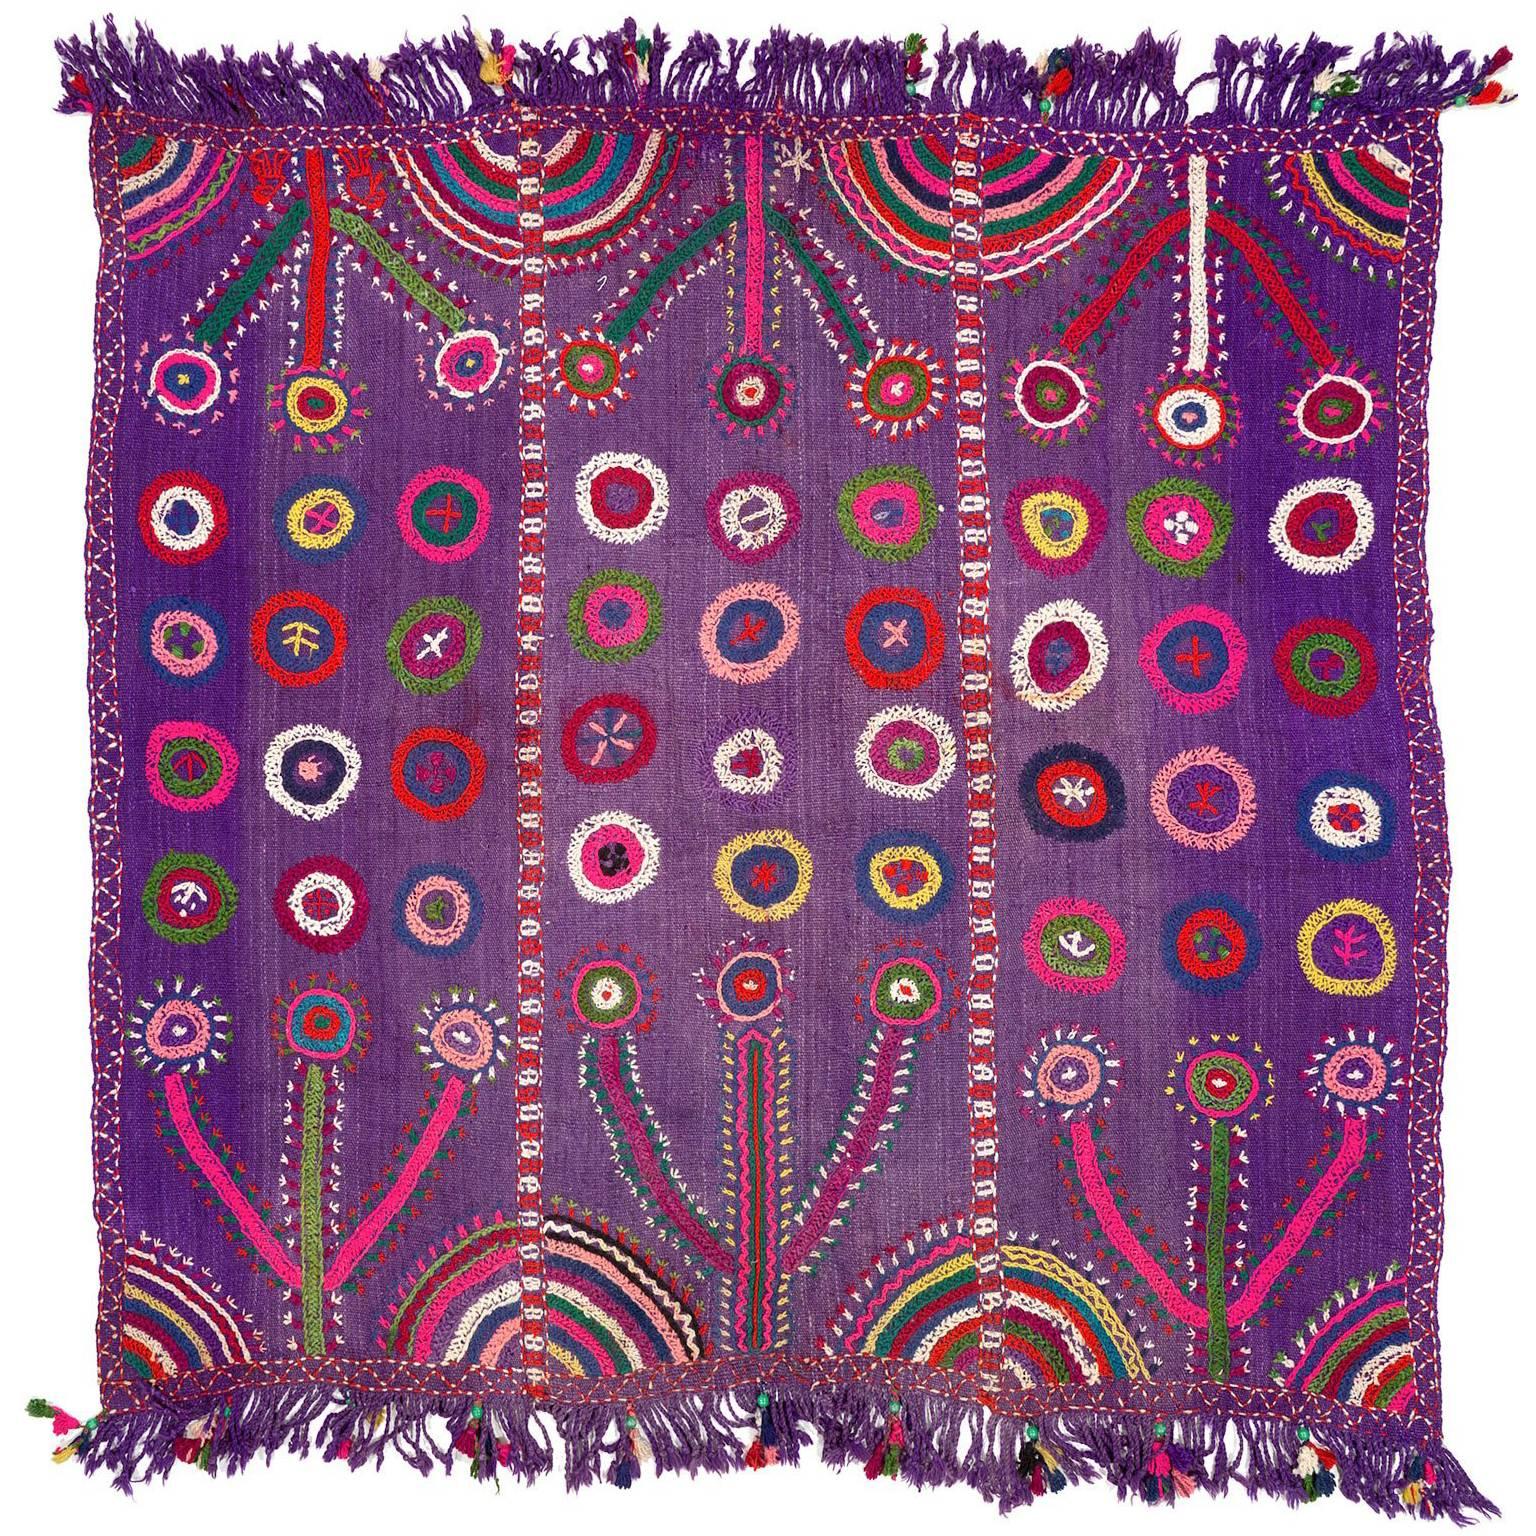 Türkisches besticktes Vintage-Volkskunst-Textil in Violett, Wandbehang oder Überwurf